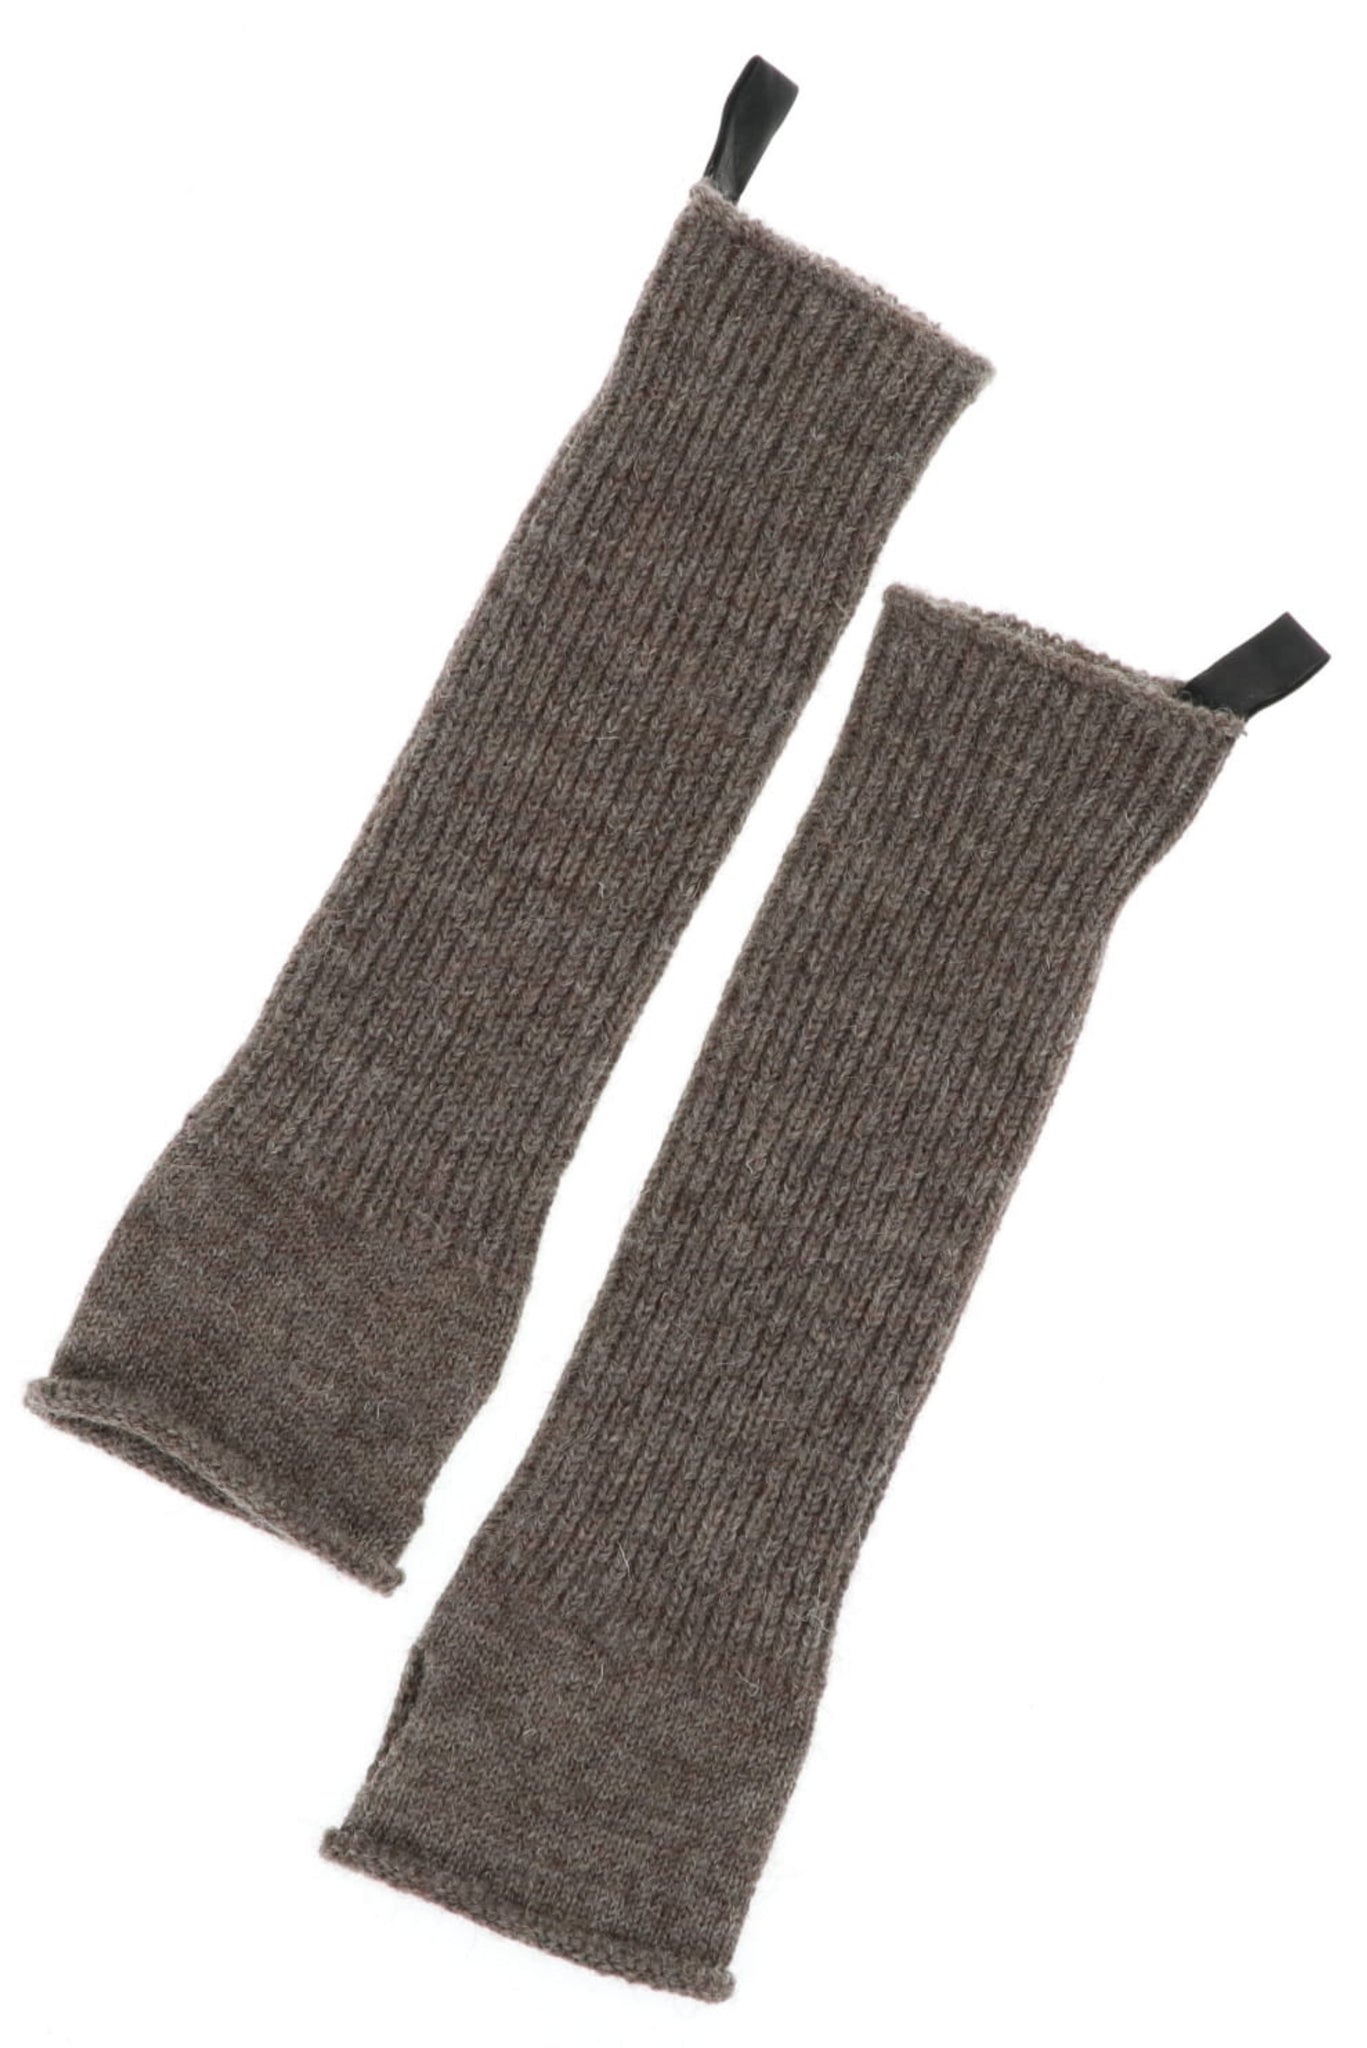 D:Hygen Shetland Wool Arm Warmer